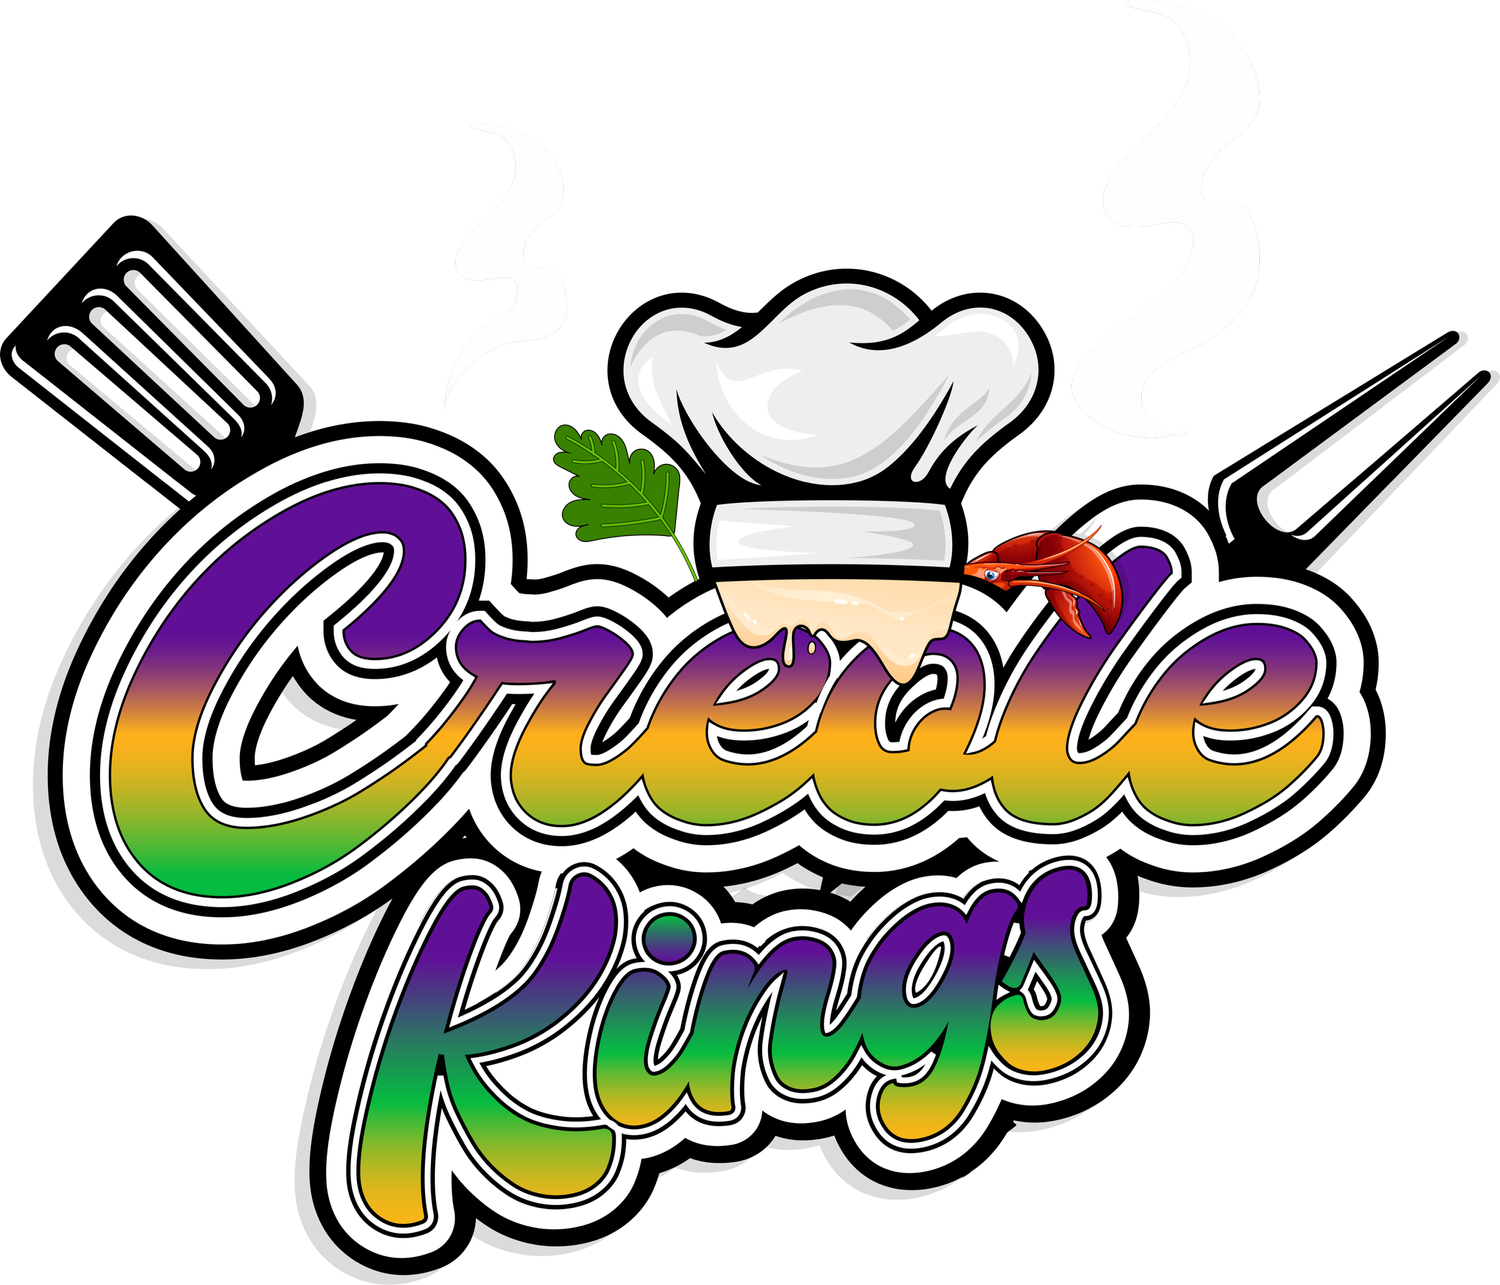 Creole Kings